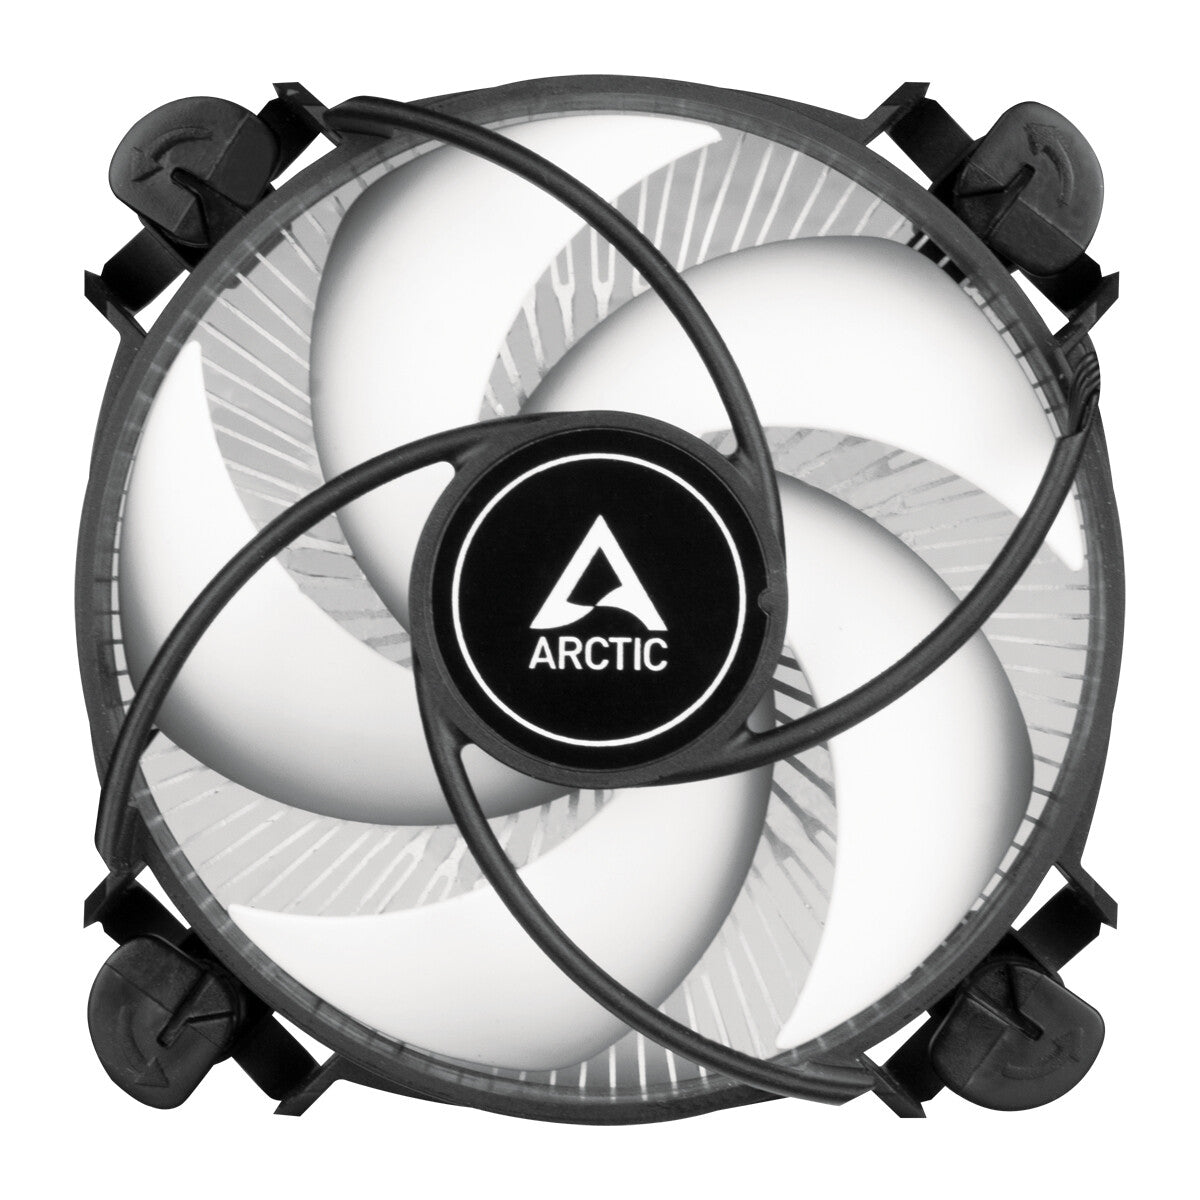 ARCTIC Alpine 17 - Compact Air Processor Cooler - 92mm